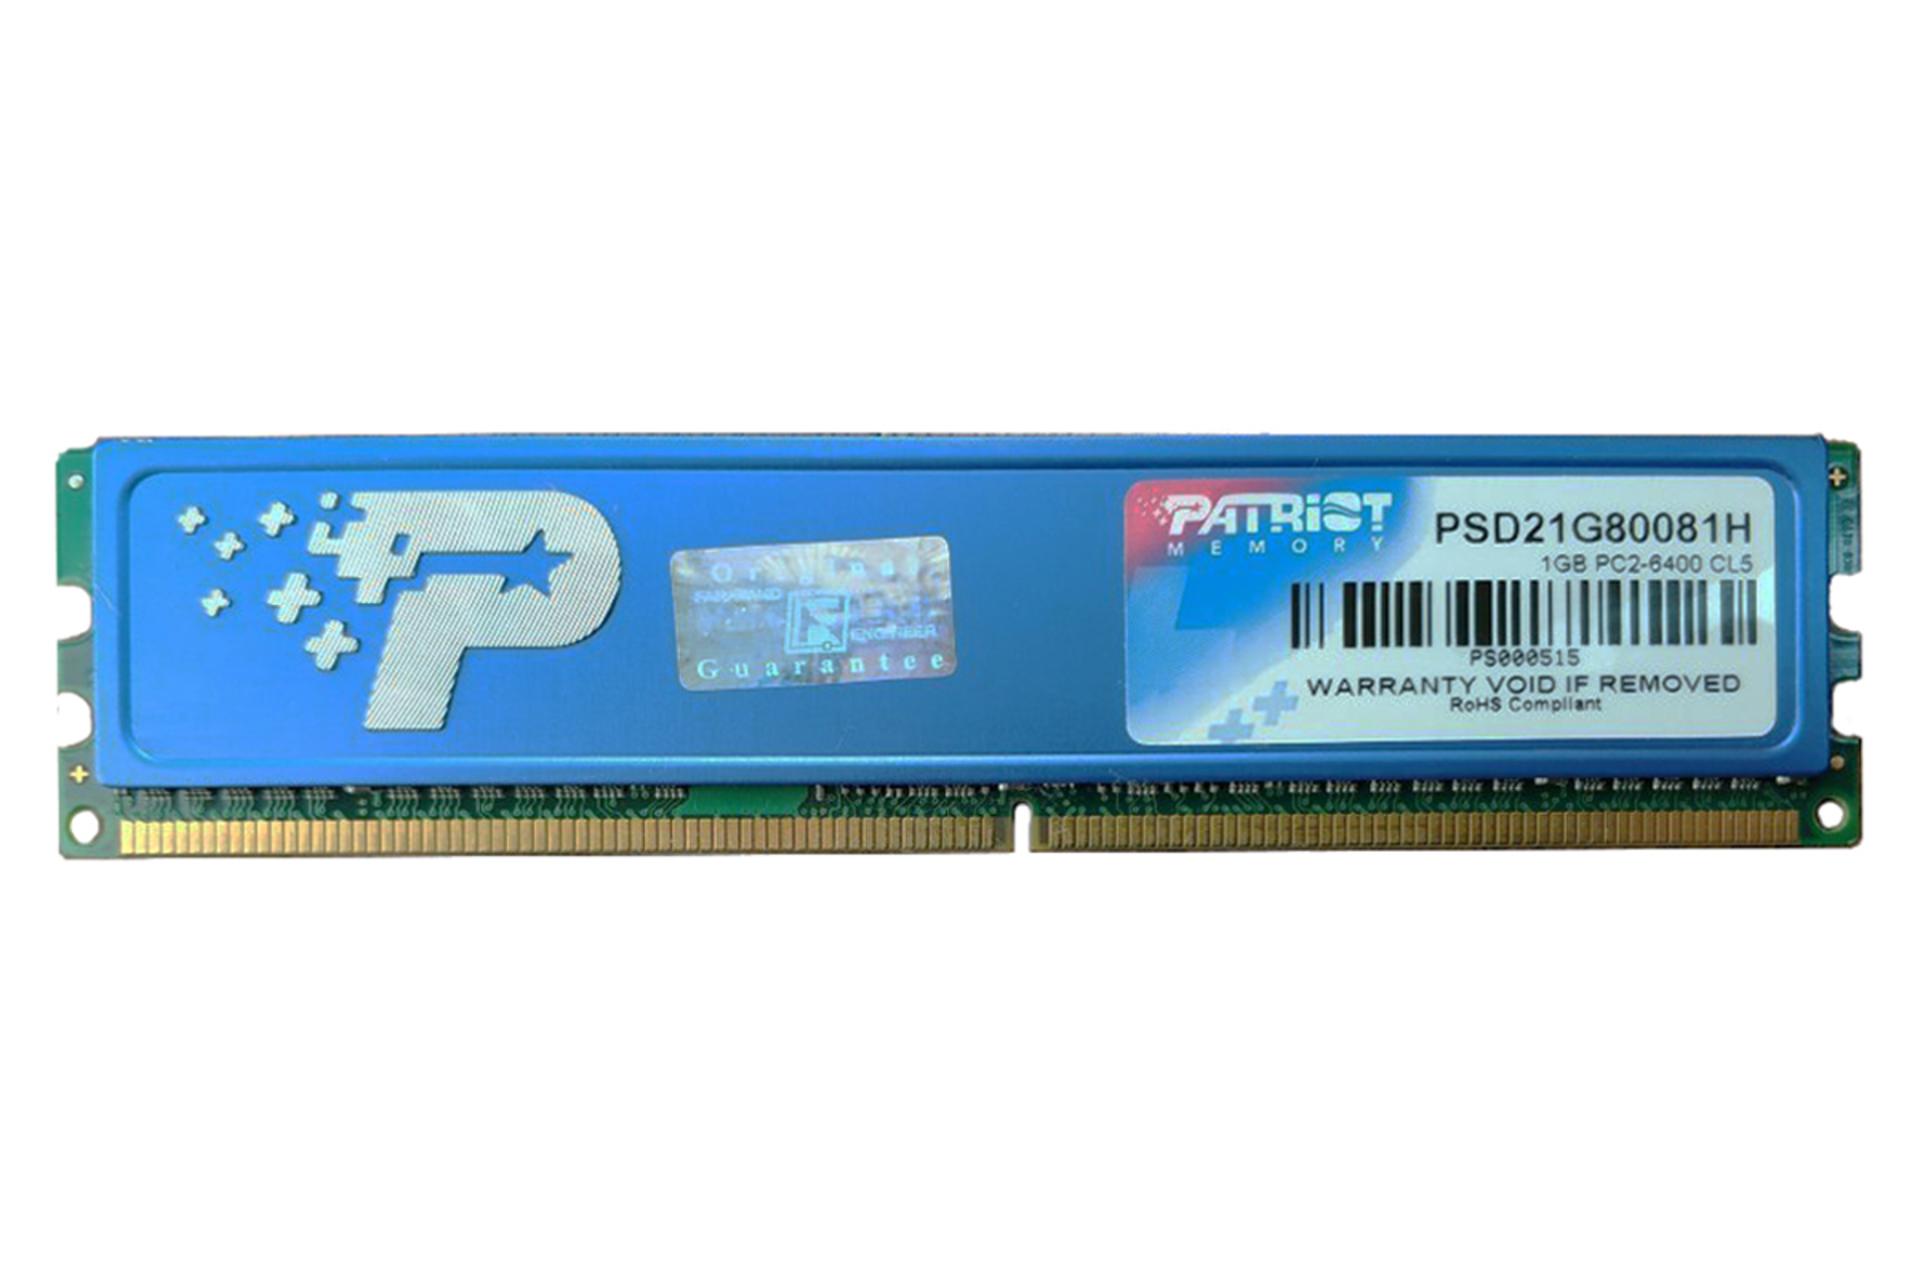 رم پاتریوت PSD21G80081H ظرفیت 1 گیگابایت از نوع DDR2-800